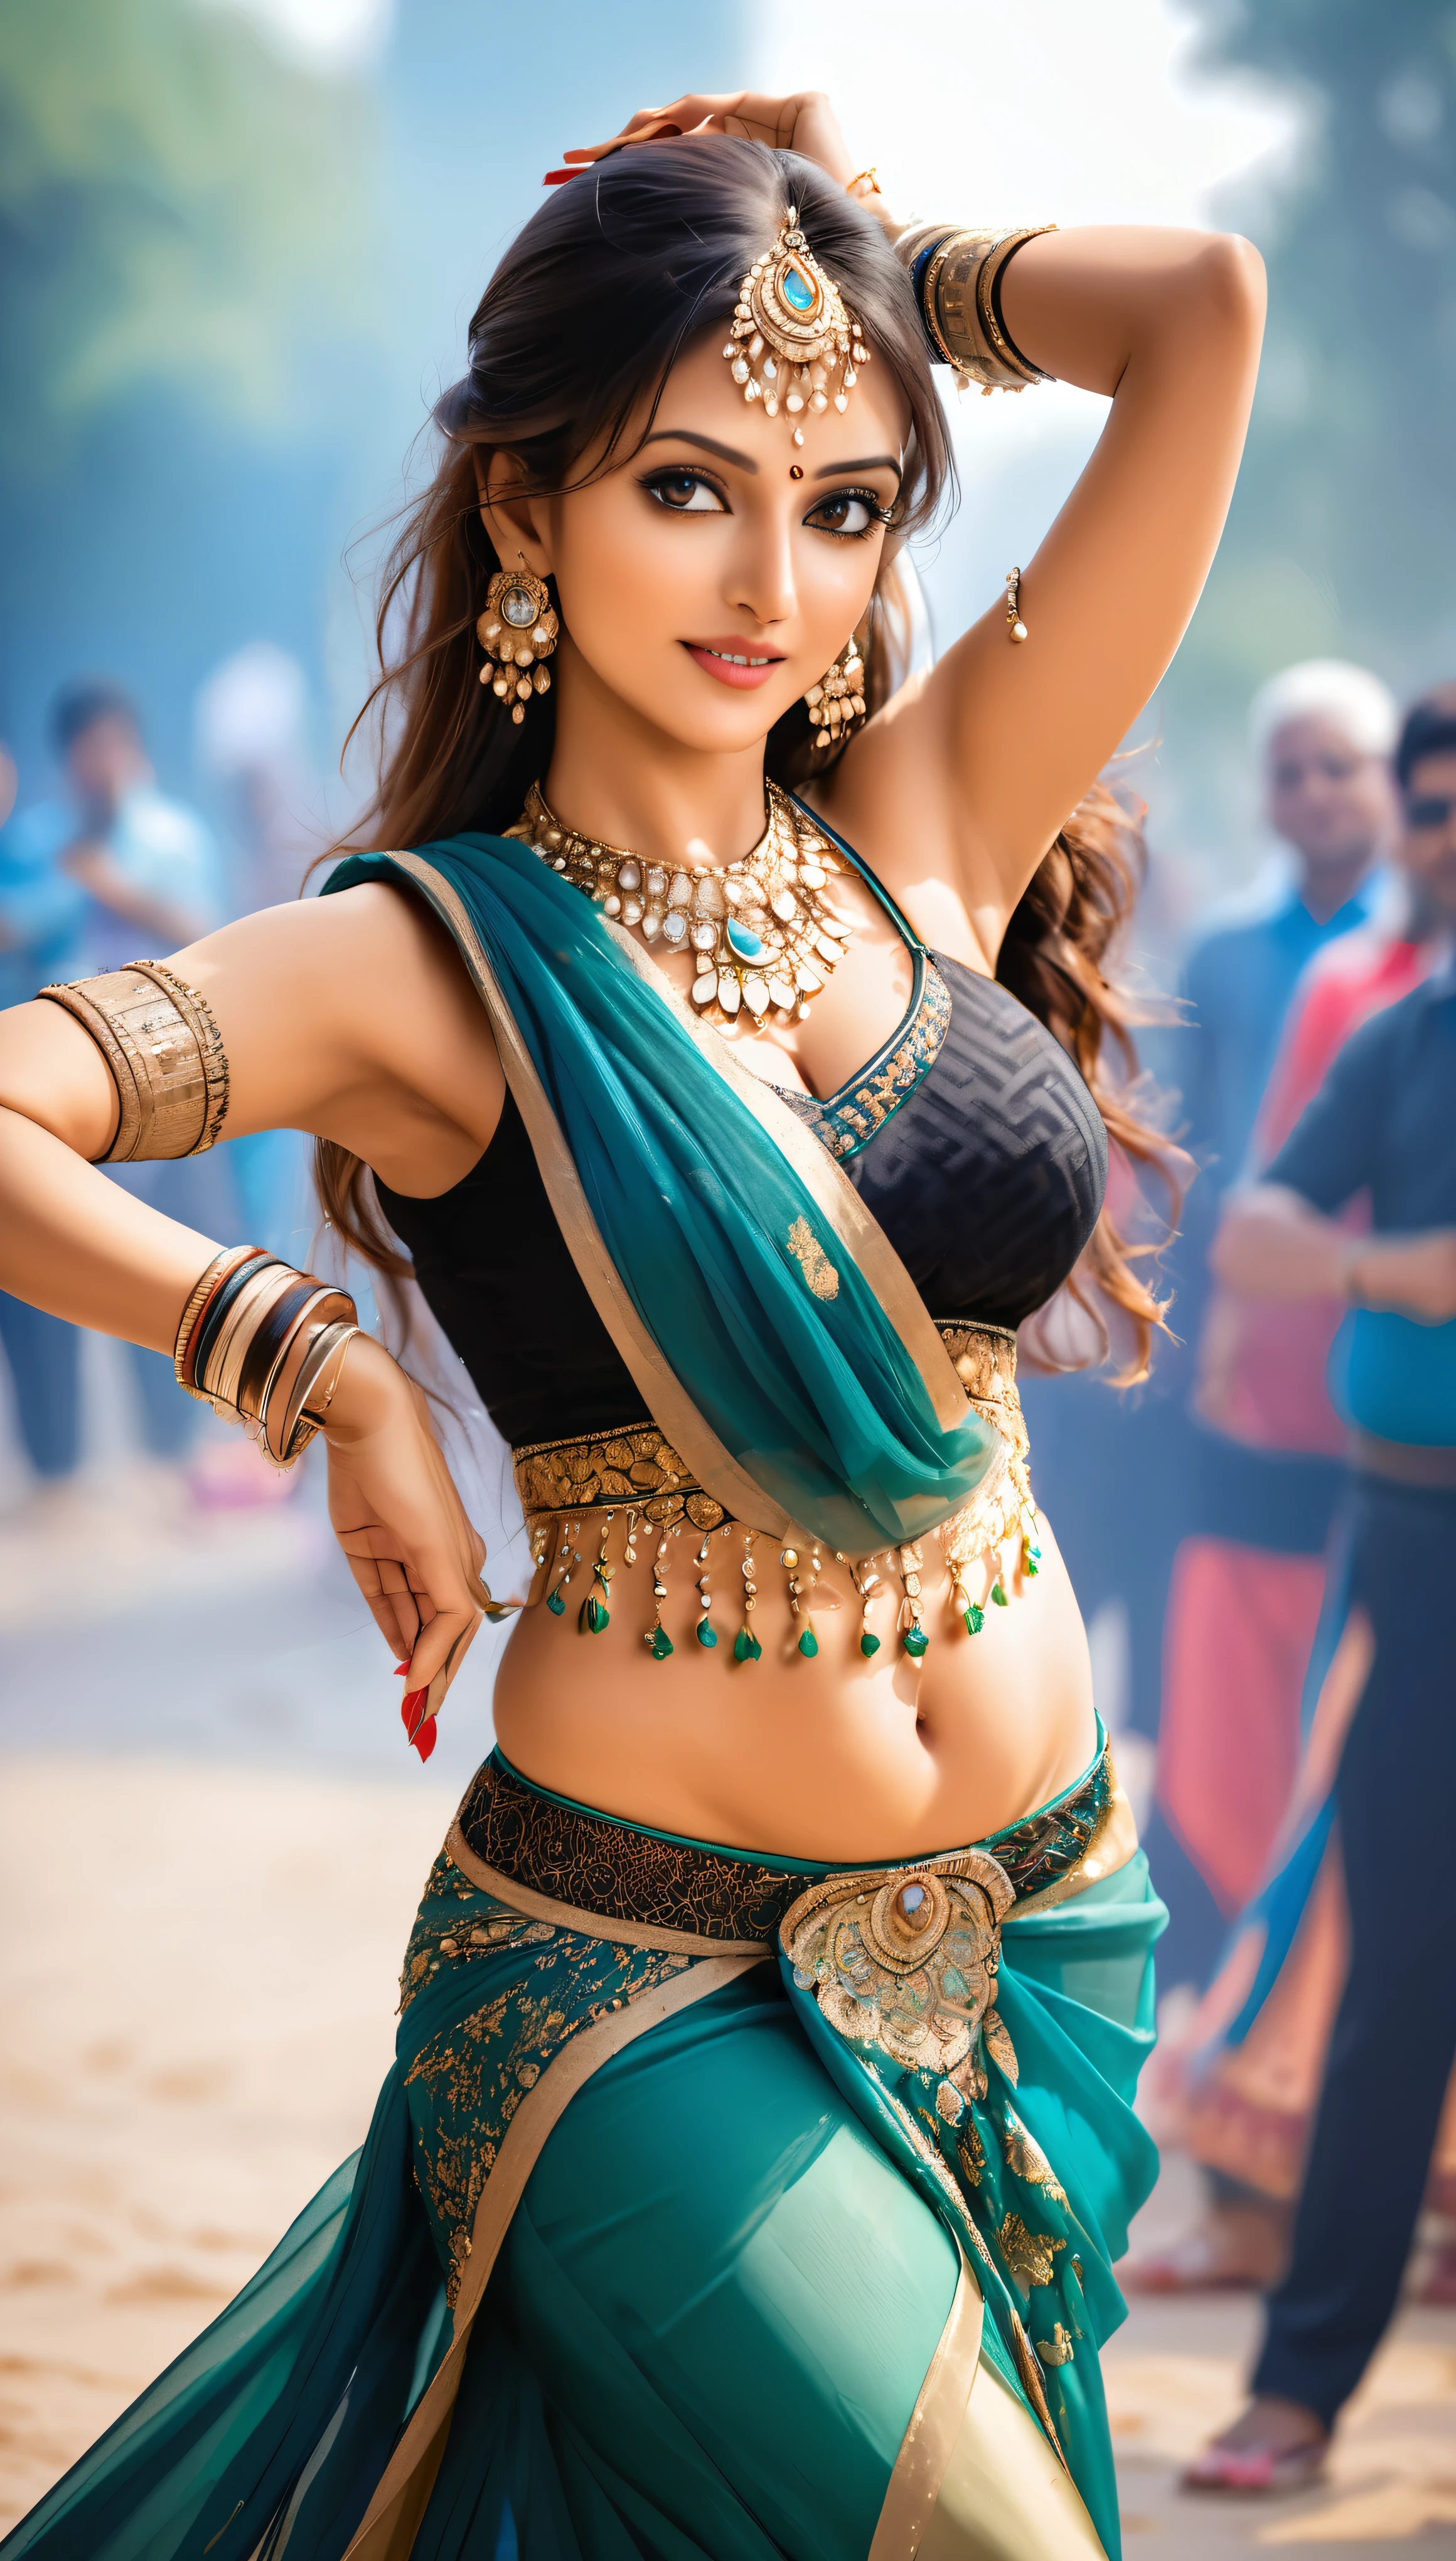 Indische Frau tanzt Bauchtanz, Sehr attraktive und reife junge Frau, Sie fesselt das Publikum in ihrem verführerischen Sari., BEAK Foto, 